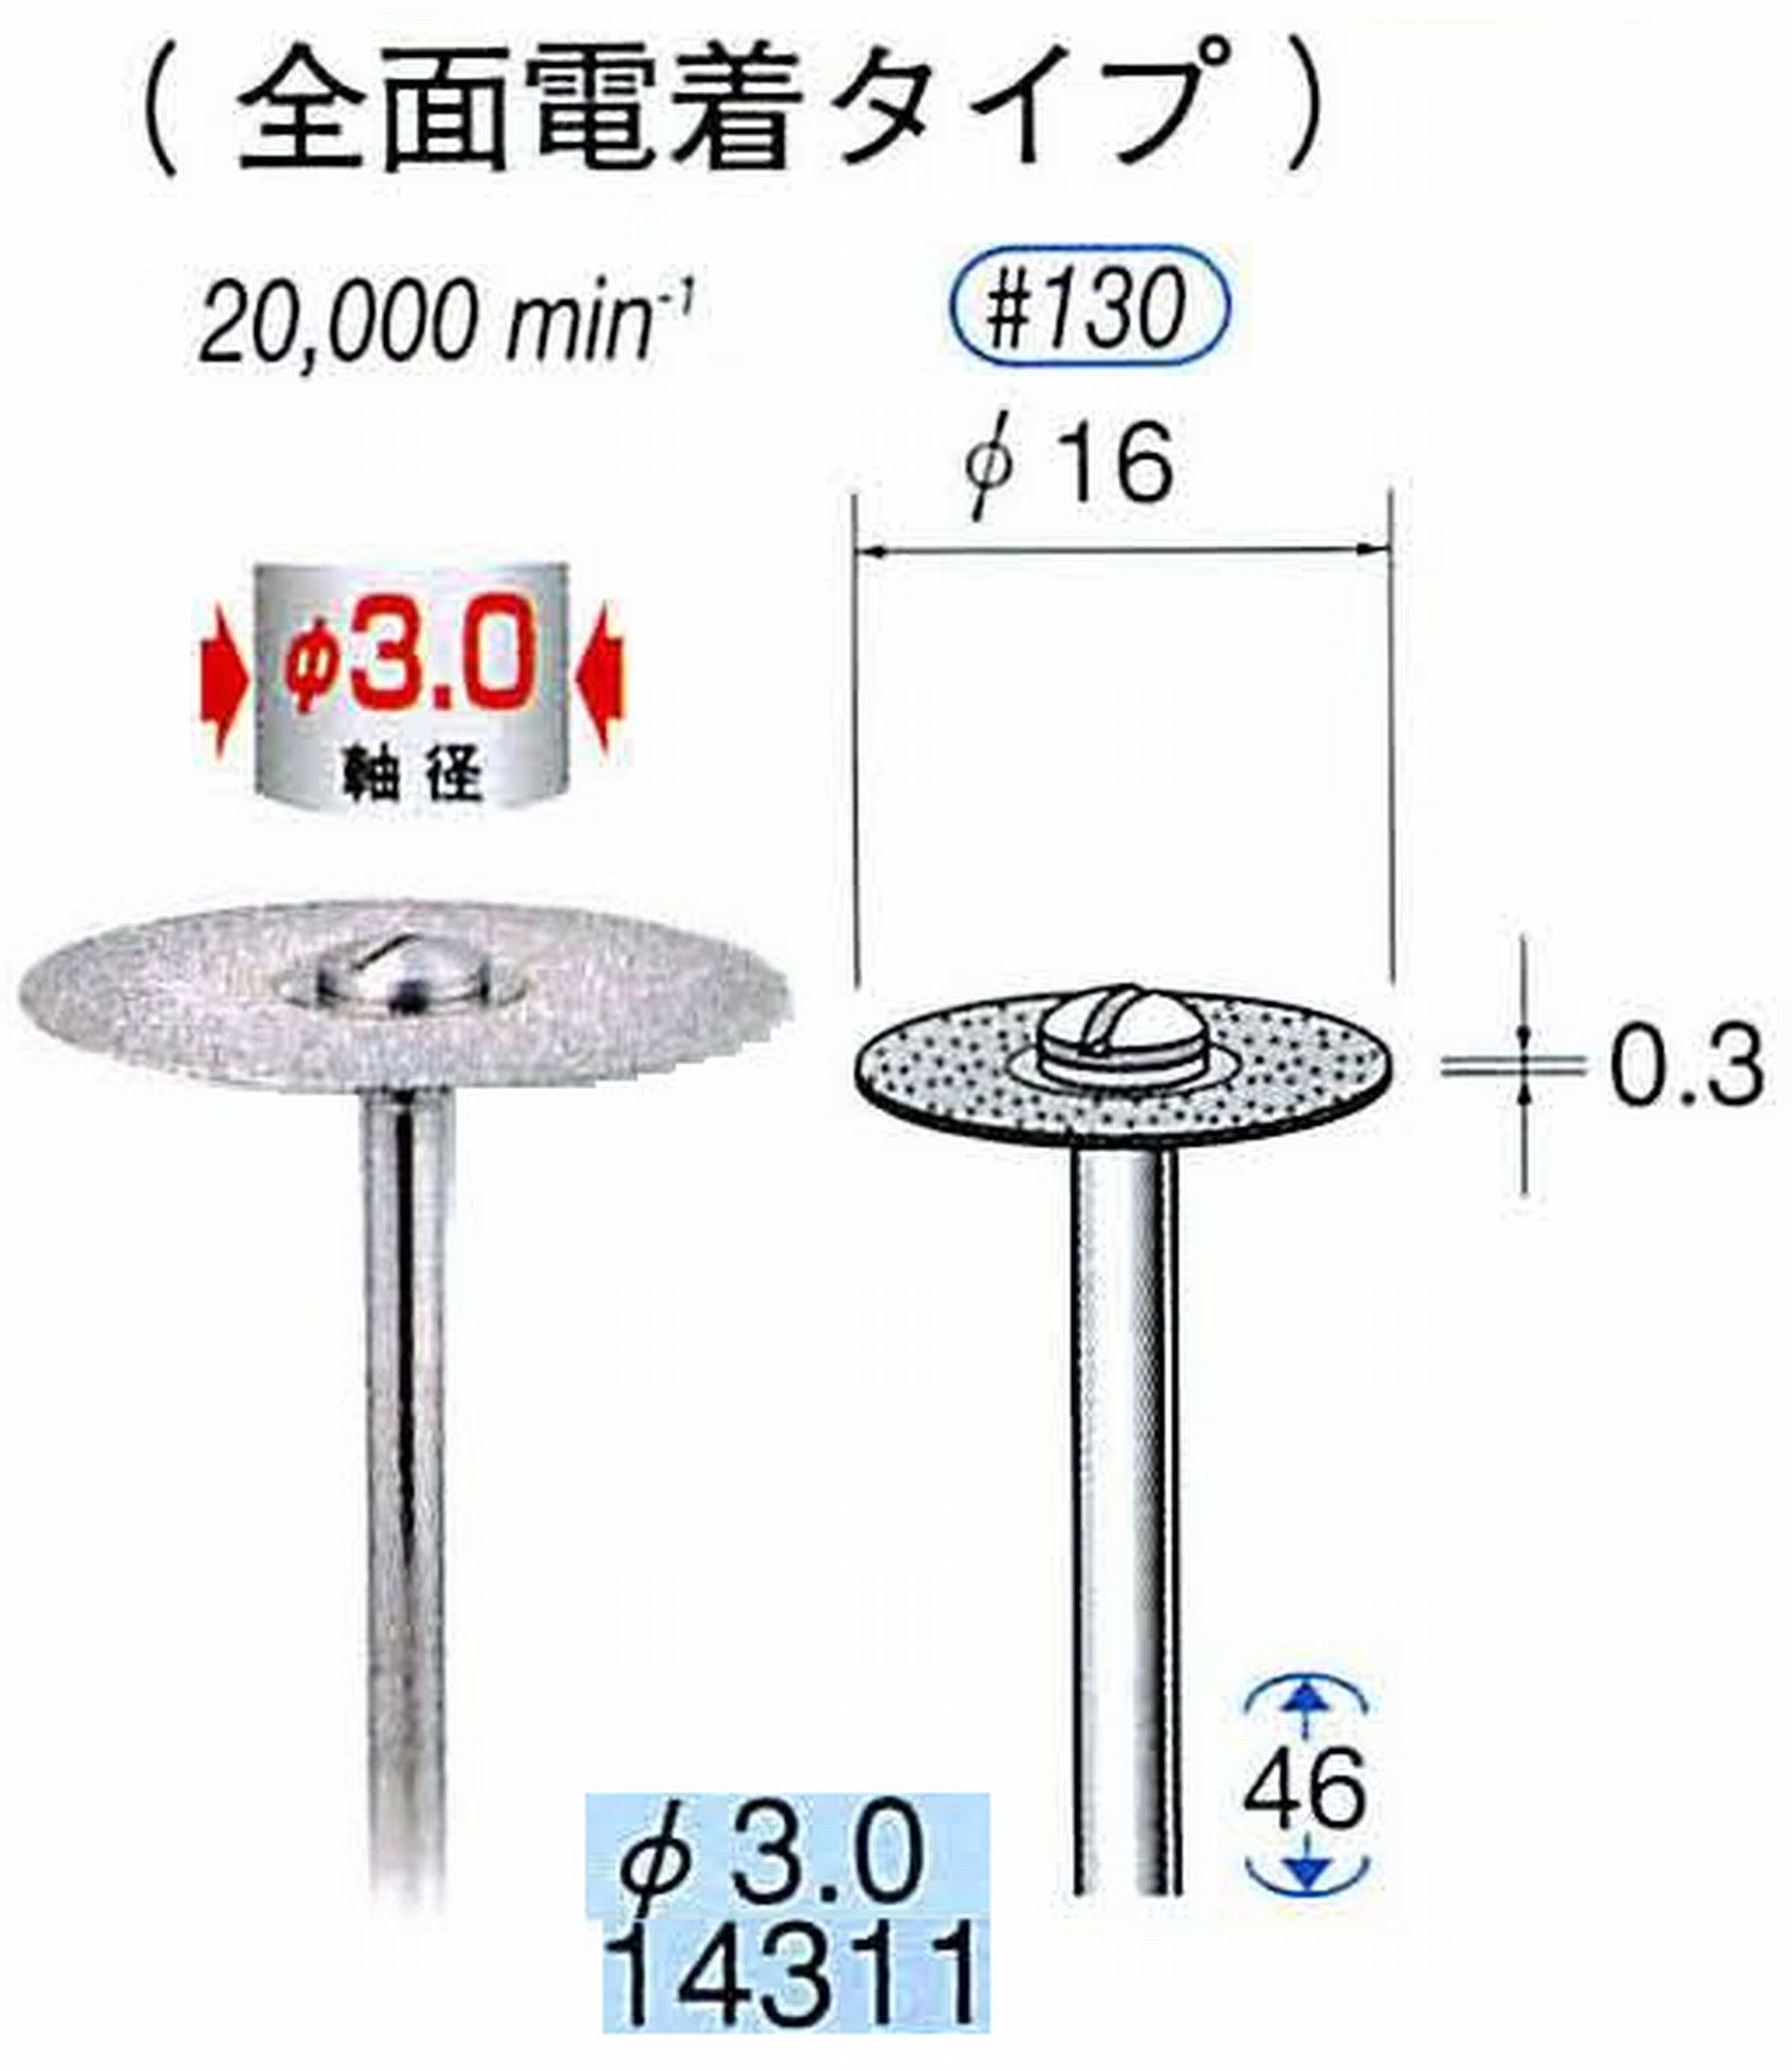 ナカニシ/NAKANISHI ダイヤモンドカッティングディスク 電着タイプ 軸径(シャンク)φ3.0mm 14311